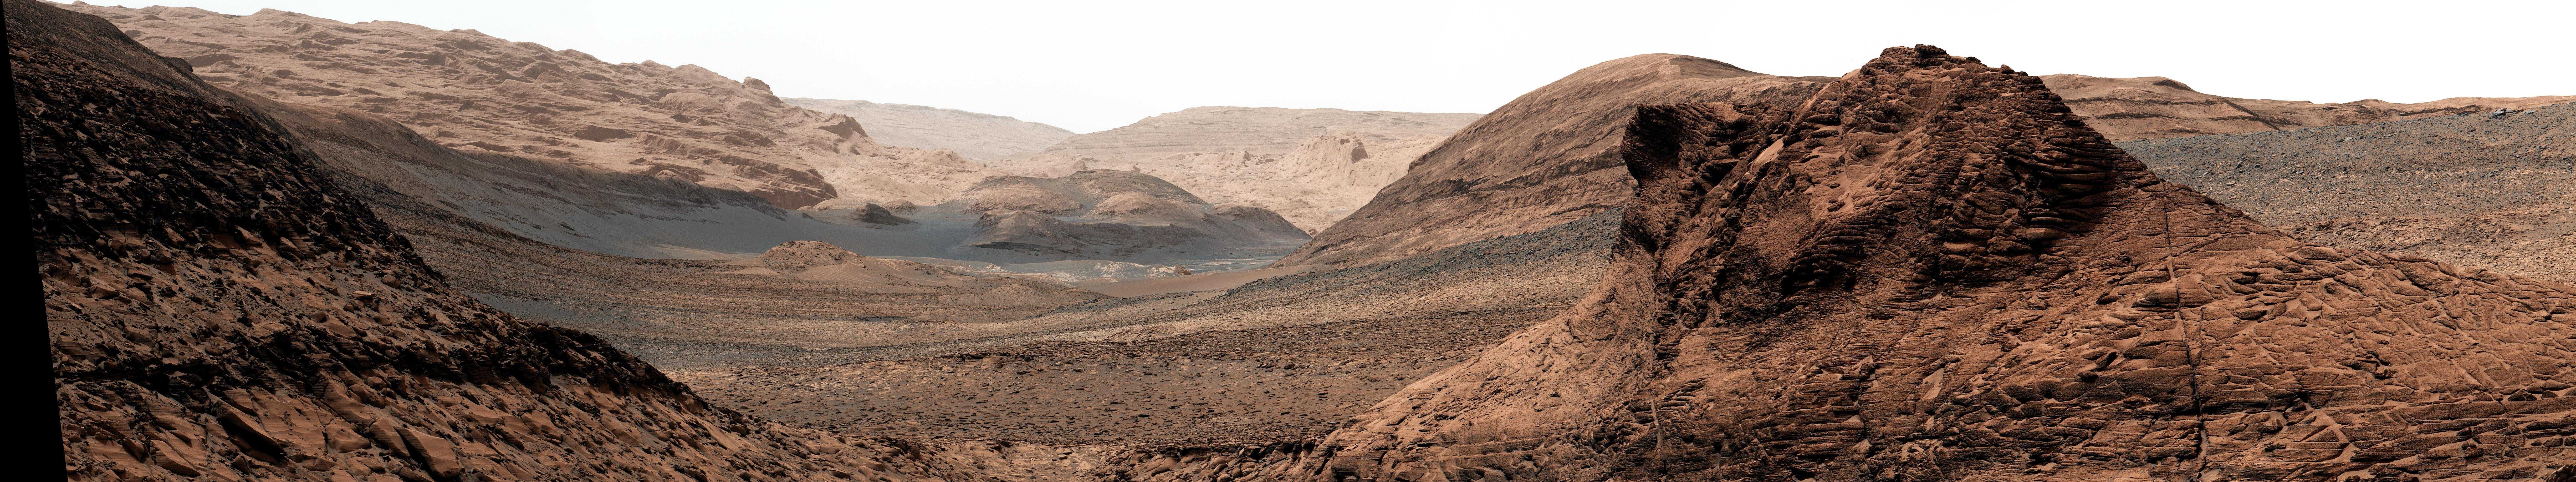 От рассвета до заката: день на Марсе глазами Curiosity